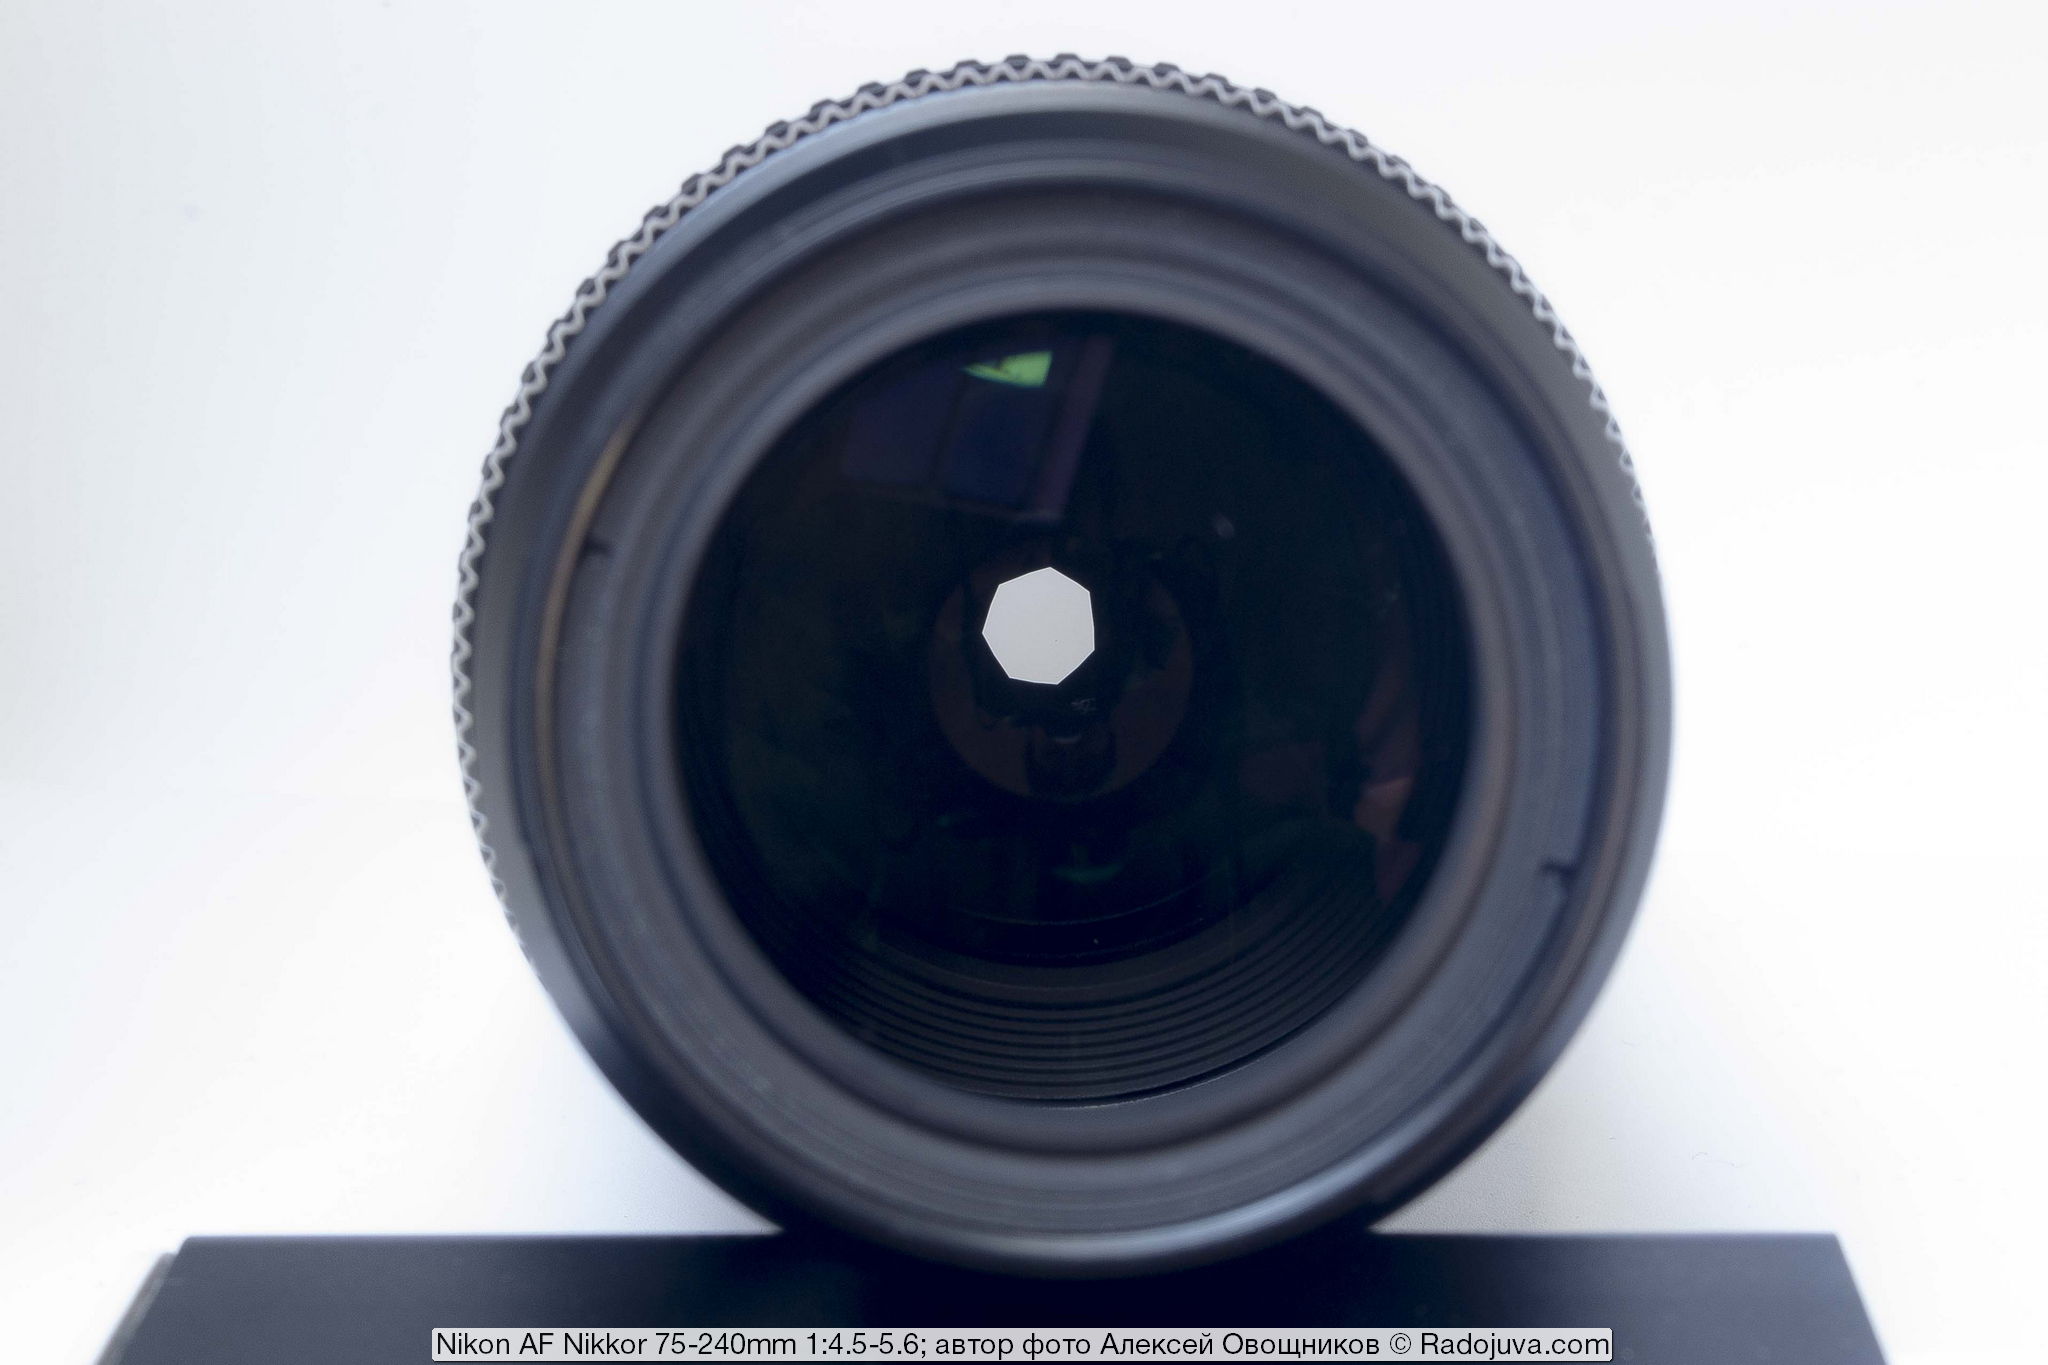 Nikon AF Nikkor 75-240 mm 1: 4.5-5.6